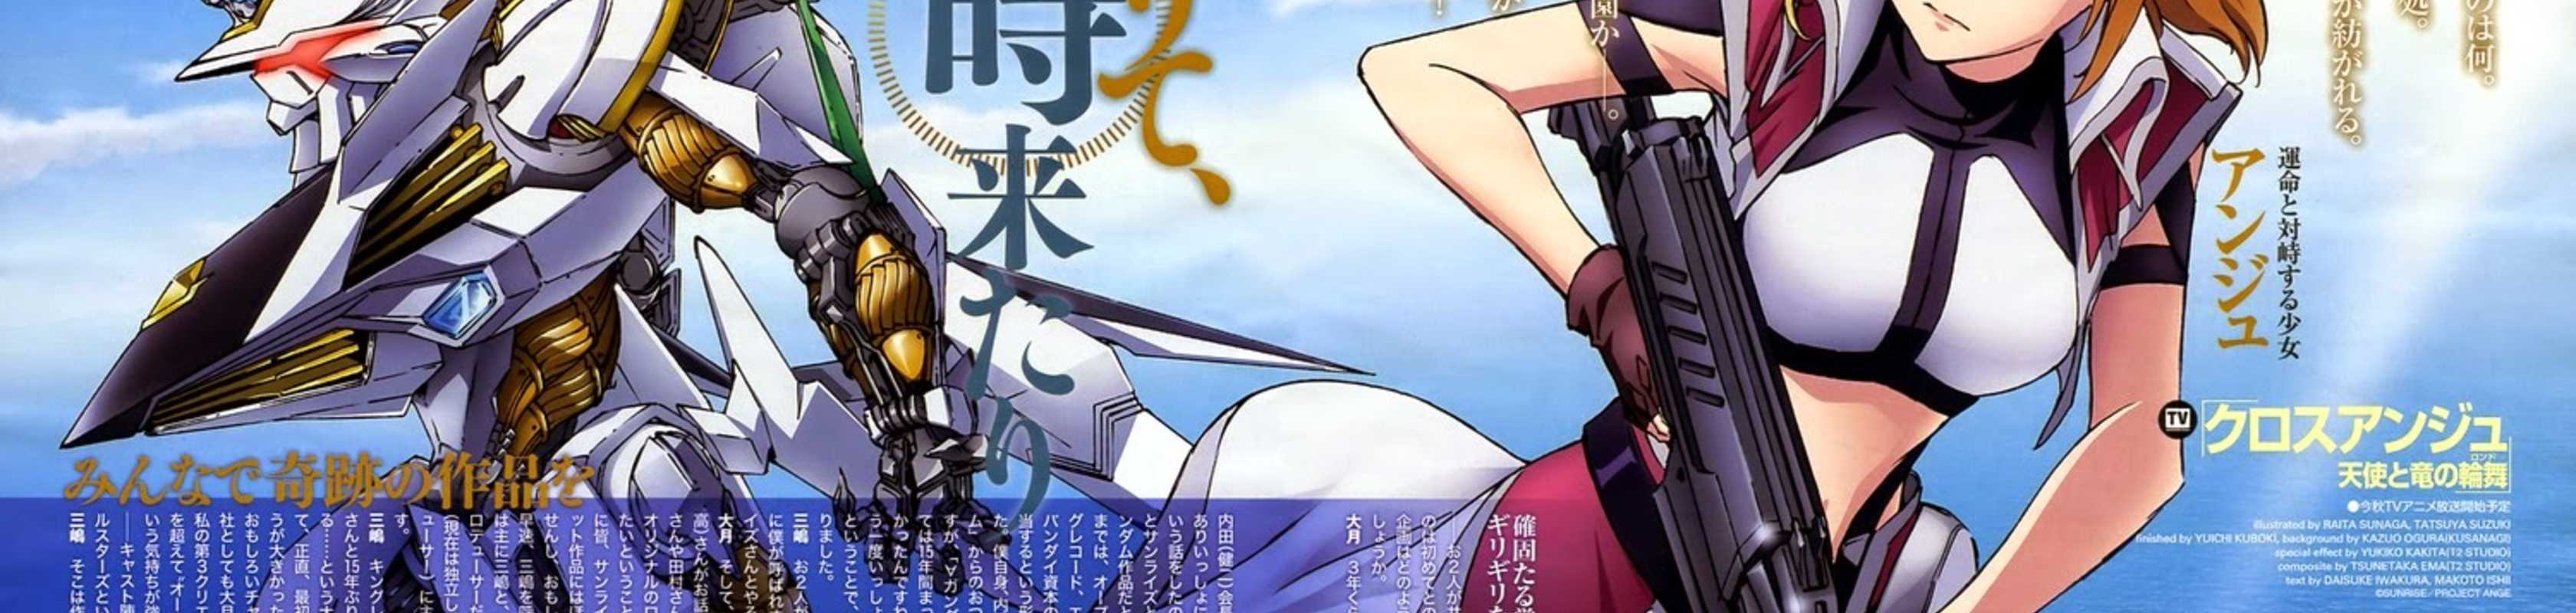 Anime Like Cross Ange: Rondo of Angel and Dragon